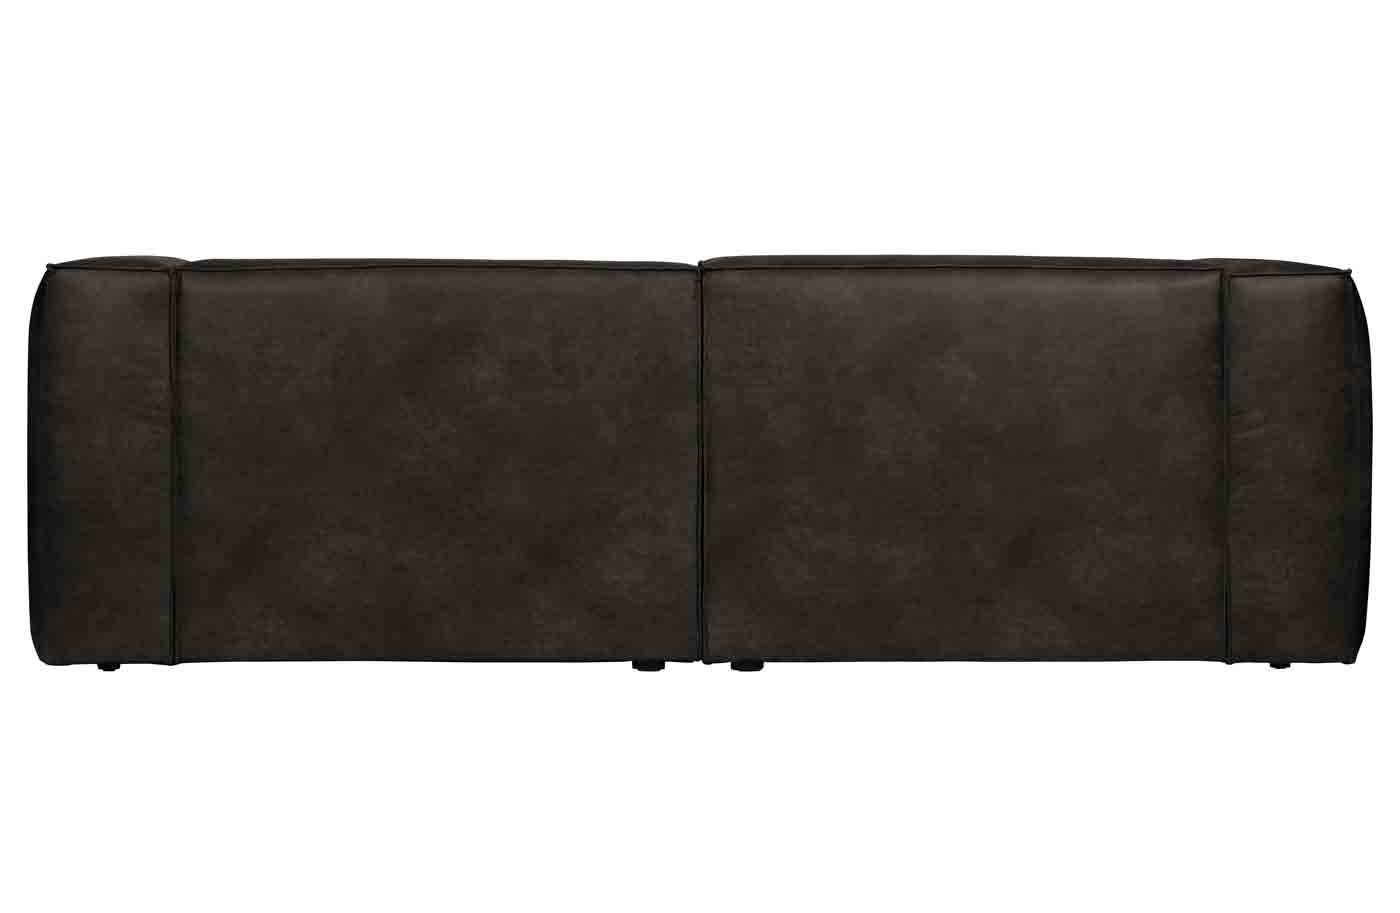 Bequemes Sofa Bean im Loft Design. Bezogen mit hochwertigem recyceltem Leder in der Farbe Schwarz